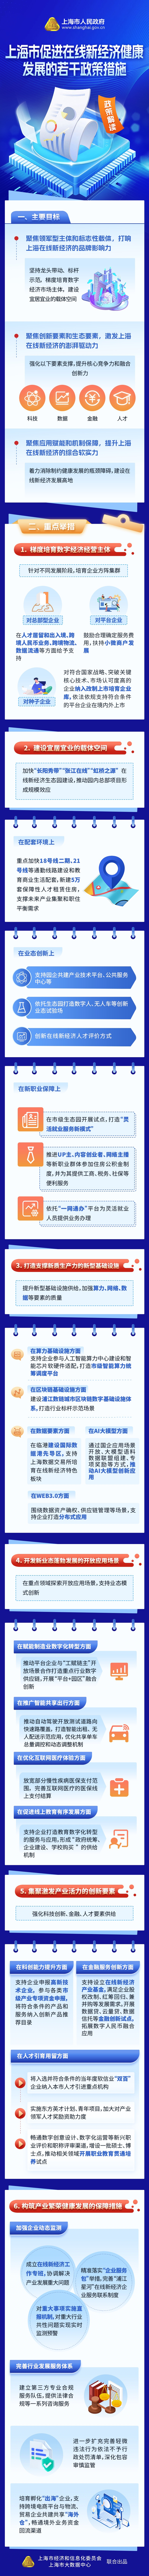 《上海市促进在线新经济健康发展的若干政策措施》政策图解.jpg